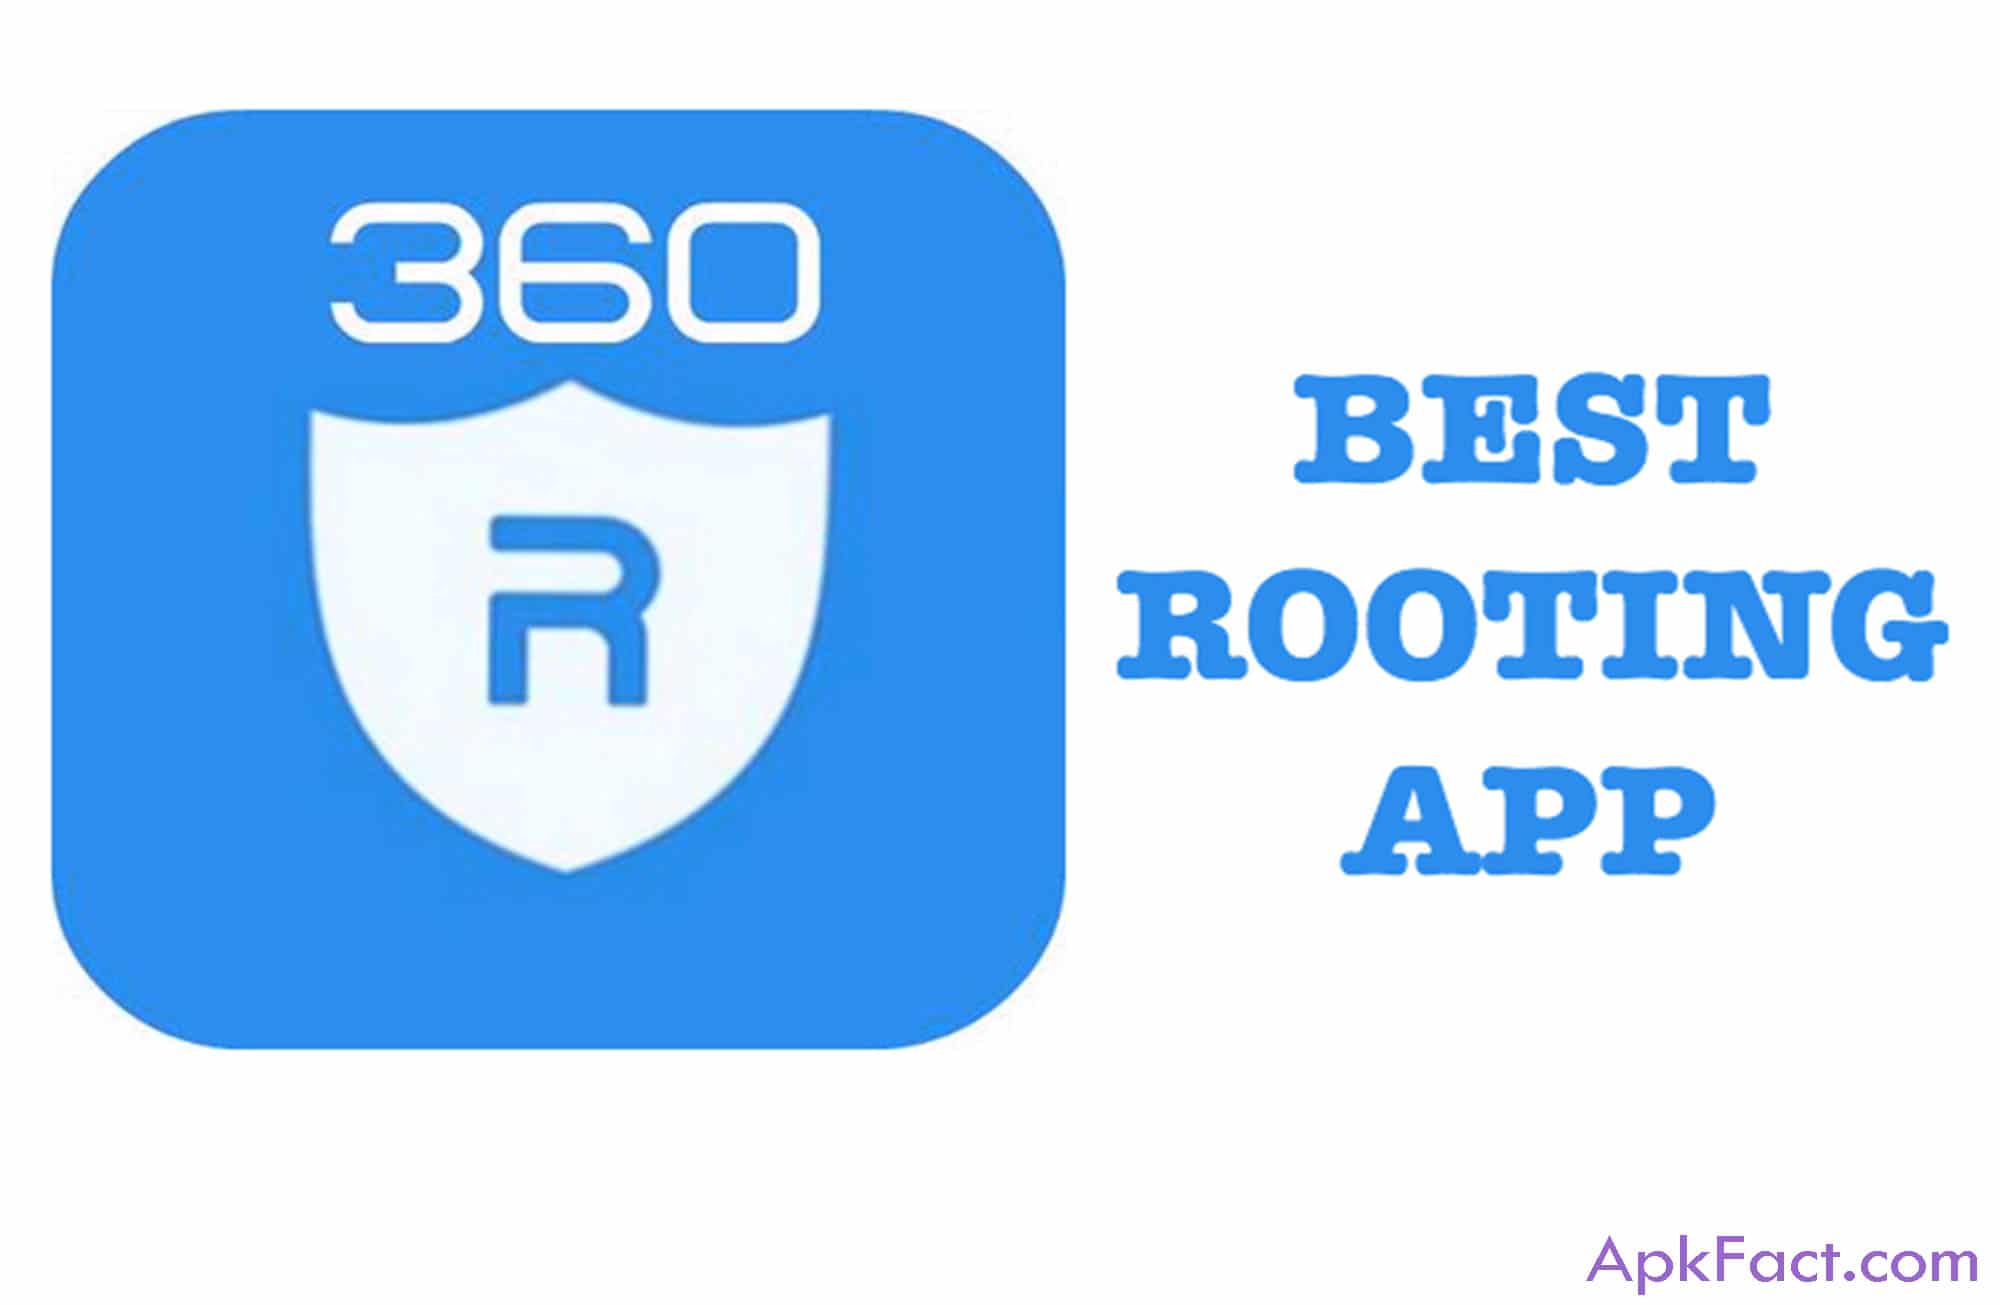 Download 360 Root APK